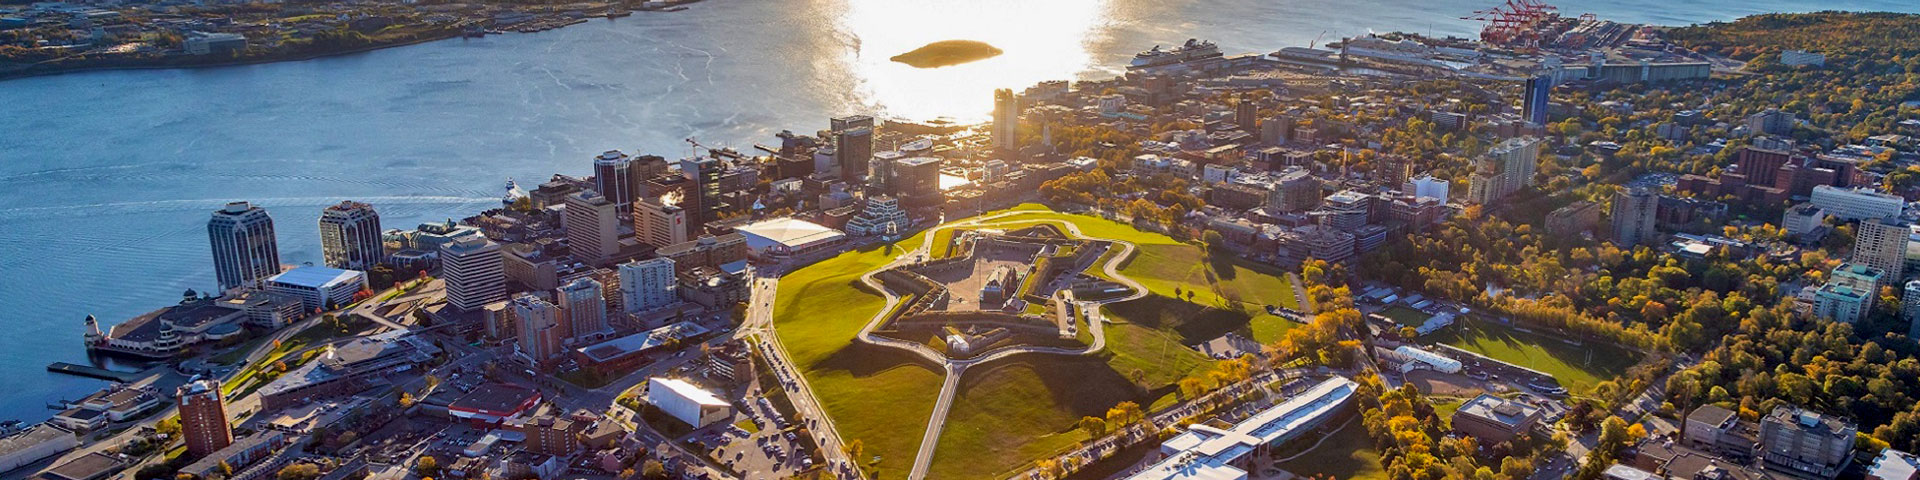 Une photo aérienne de la Citadelle d'Halifax.